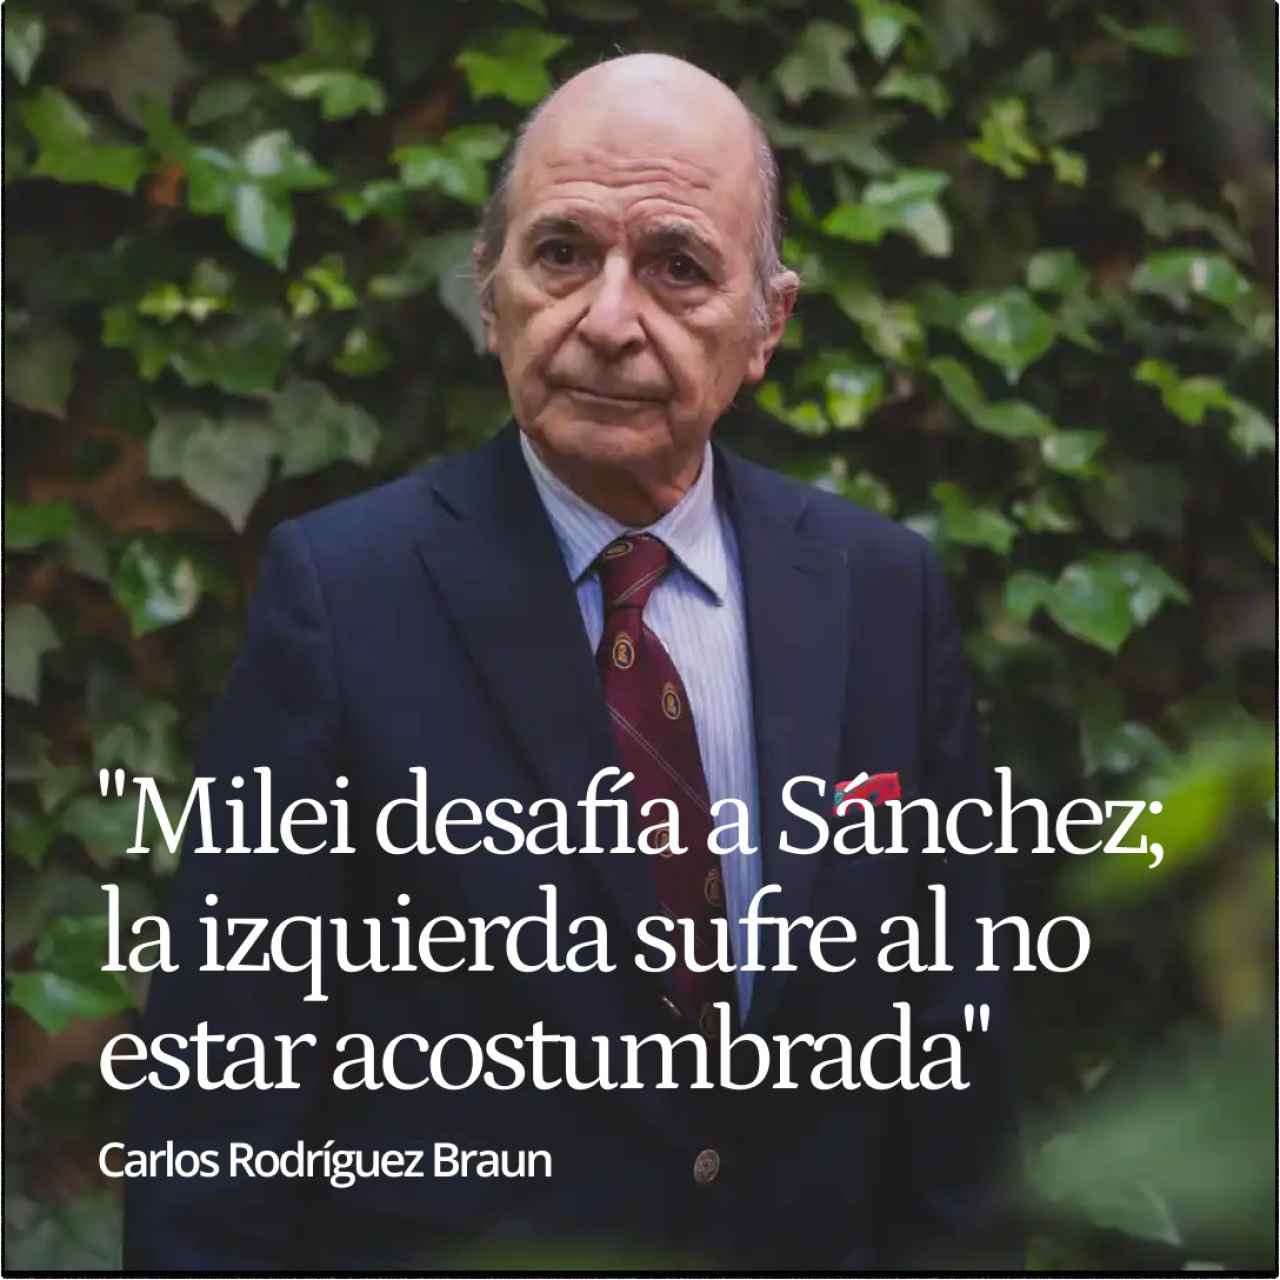 Rodríguez Braun: "Milei desafía a Sánchez jugando como él; la izquierda sufre al no estar acostumbrada"